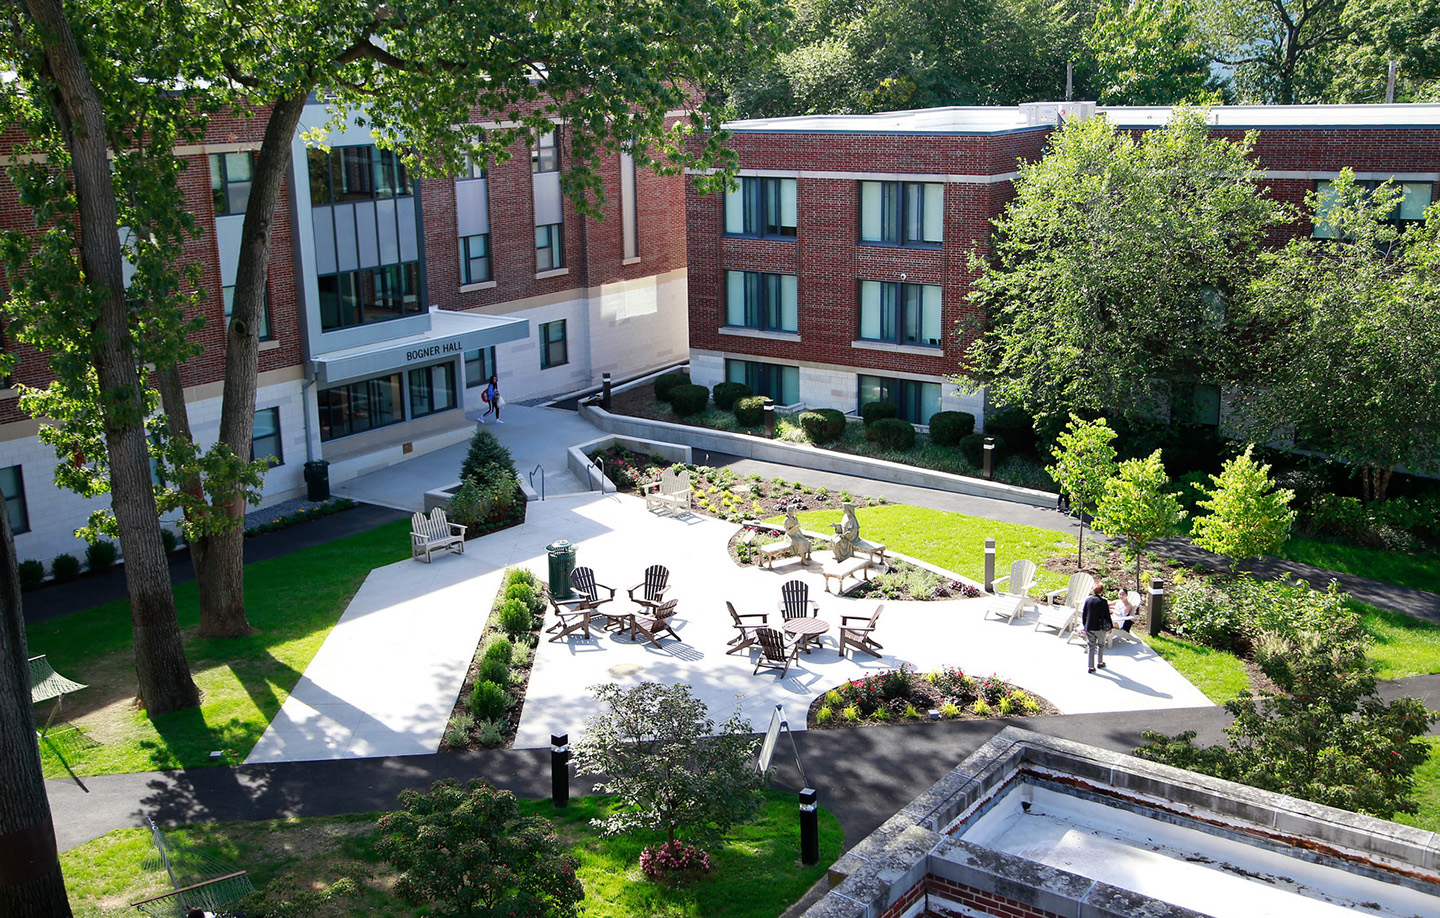 Take a virtual tour of Molloy University